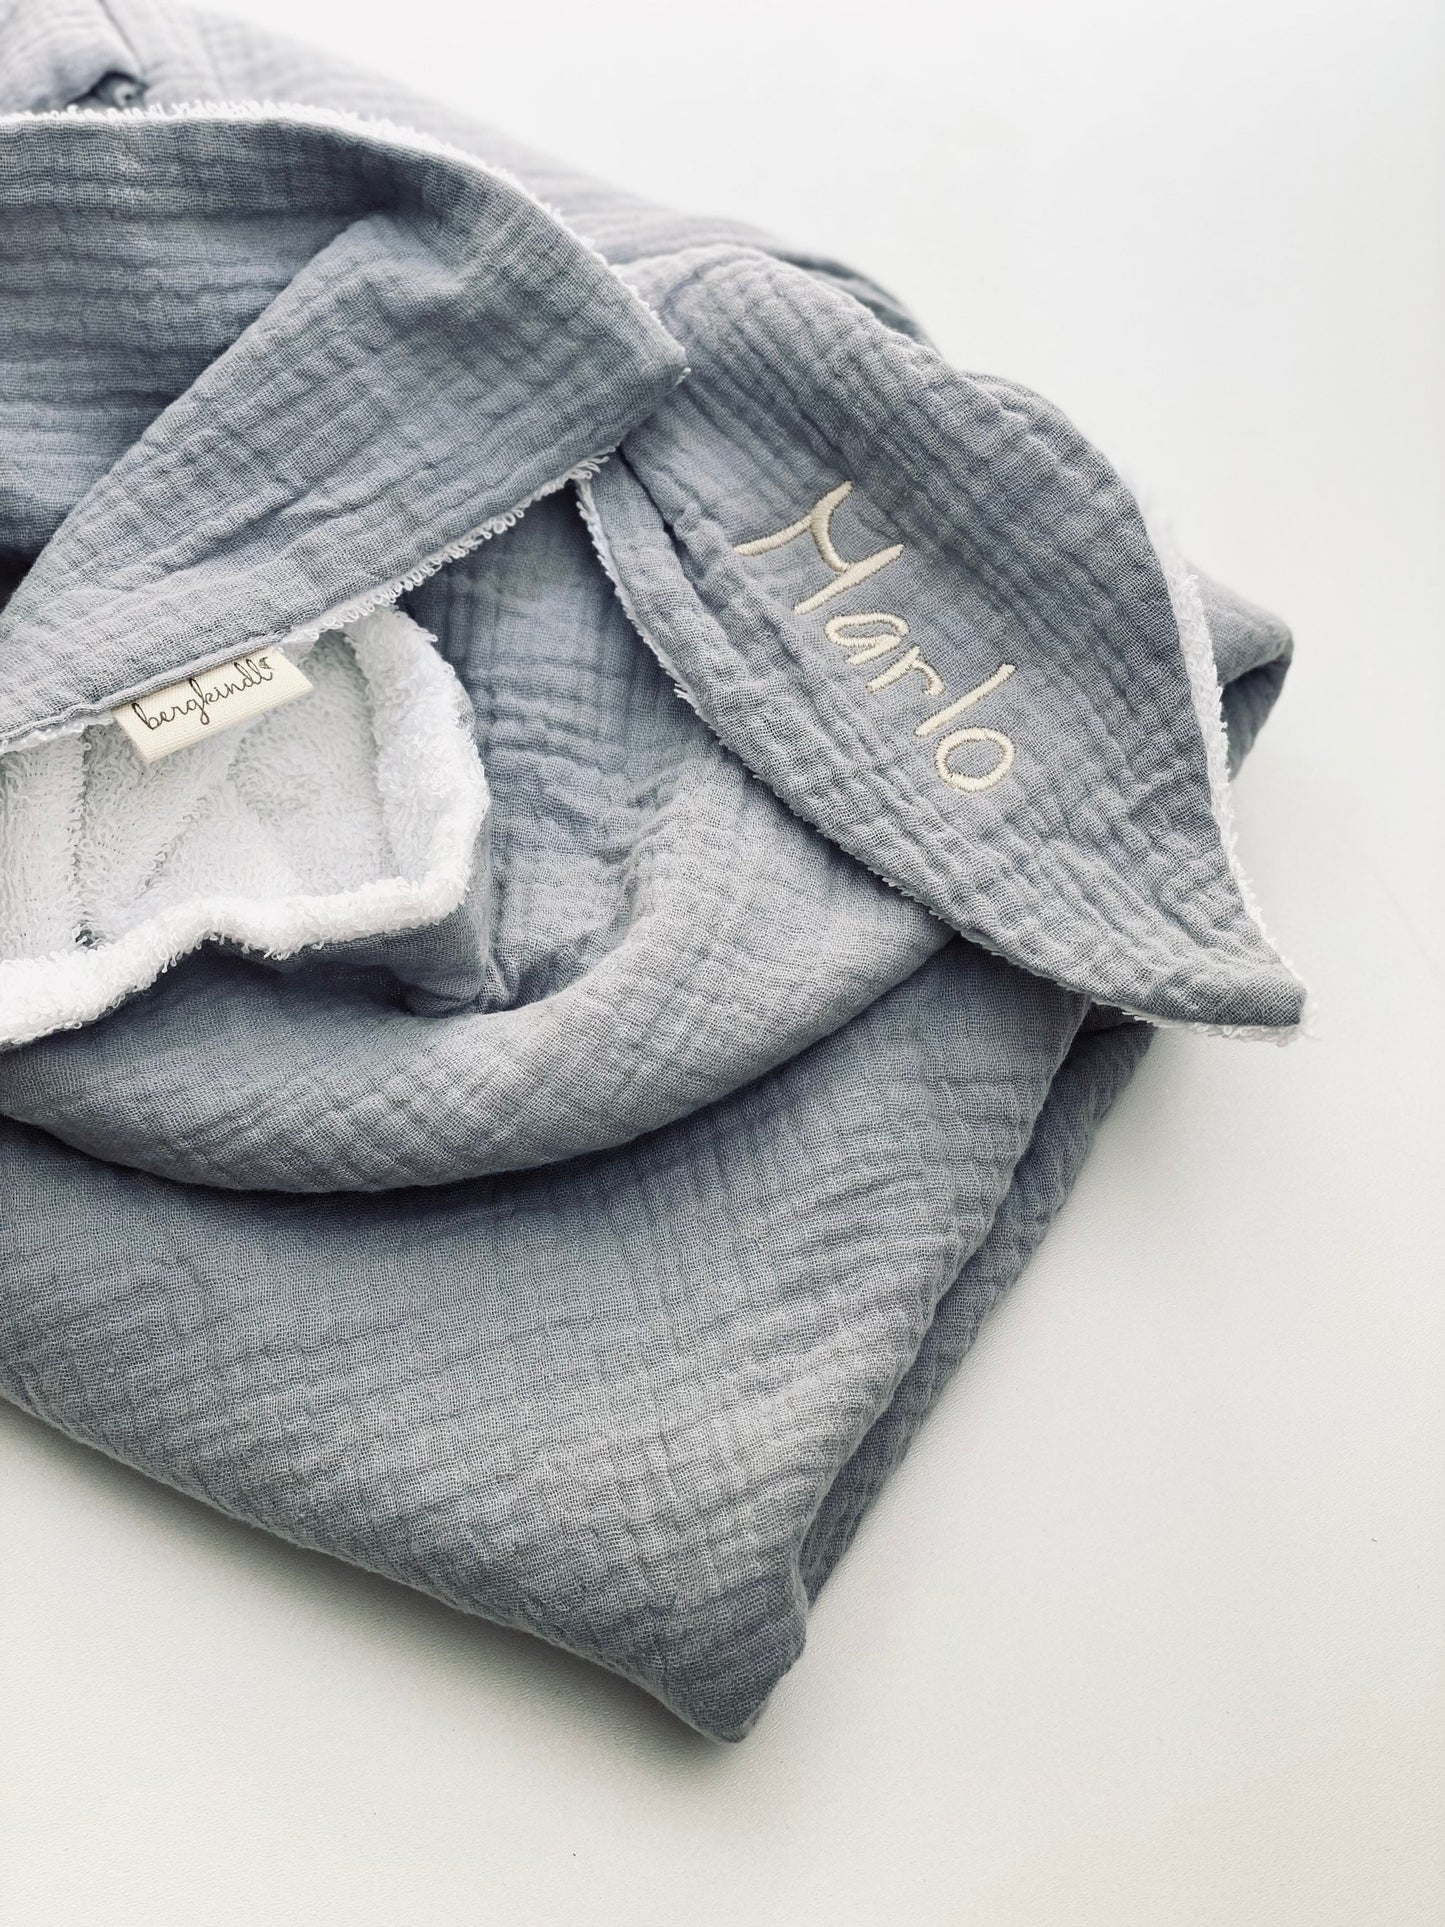 Grey hooded towel